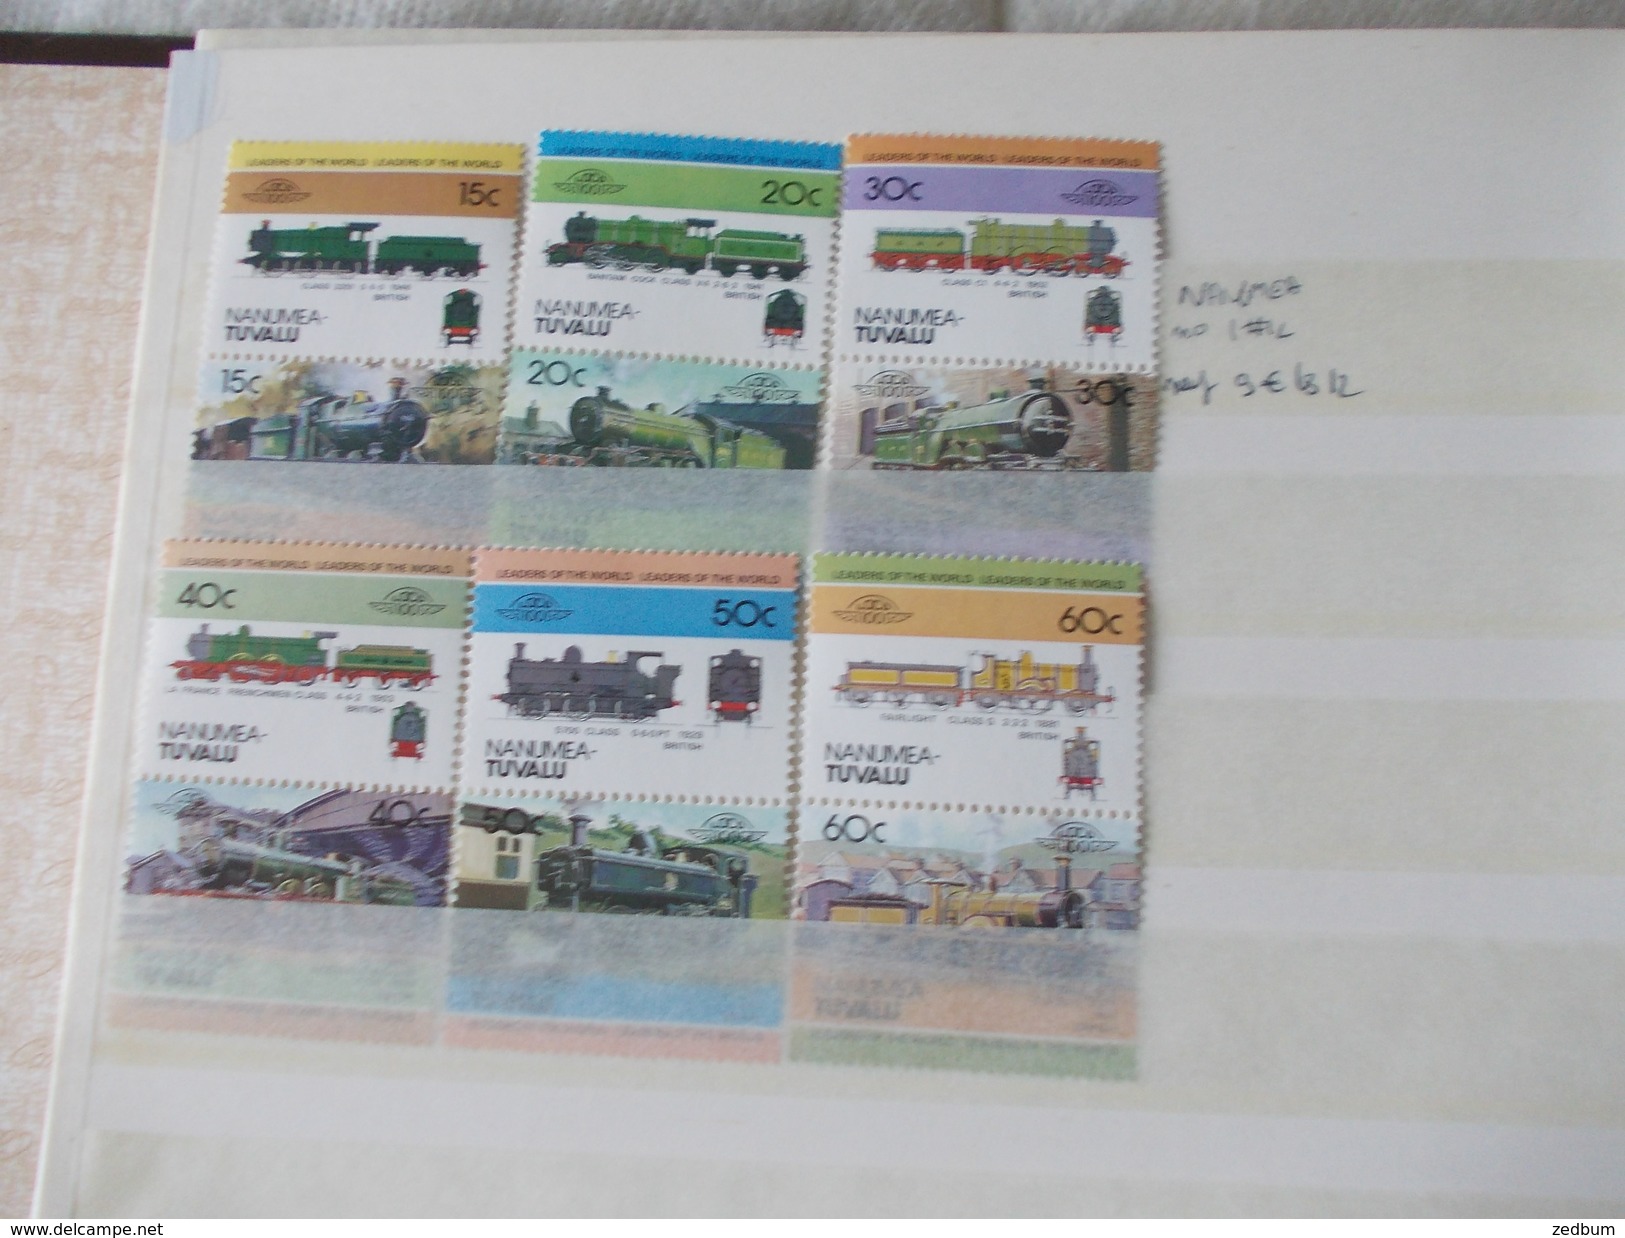 ALBUM 10 collection de timbres avec pour thème le chemin de fer train de tout pays valeur 377.40 &euro;